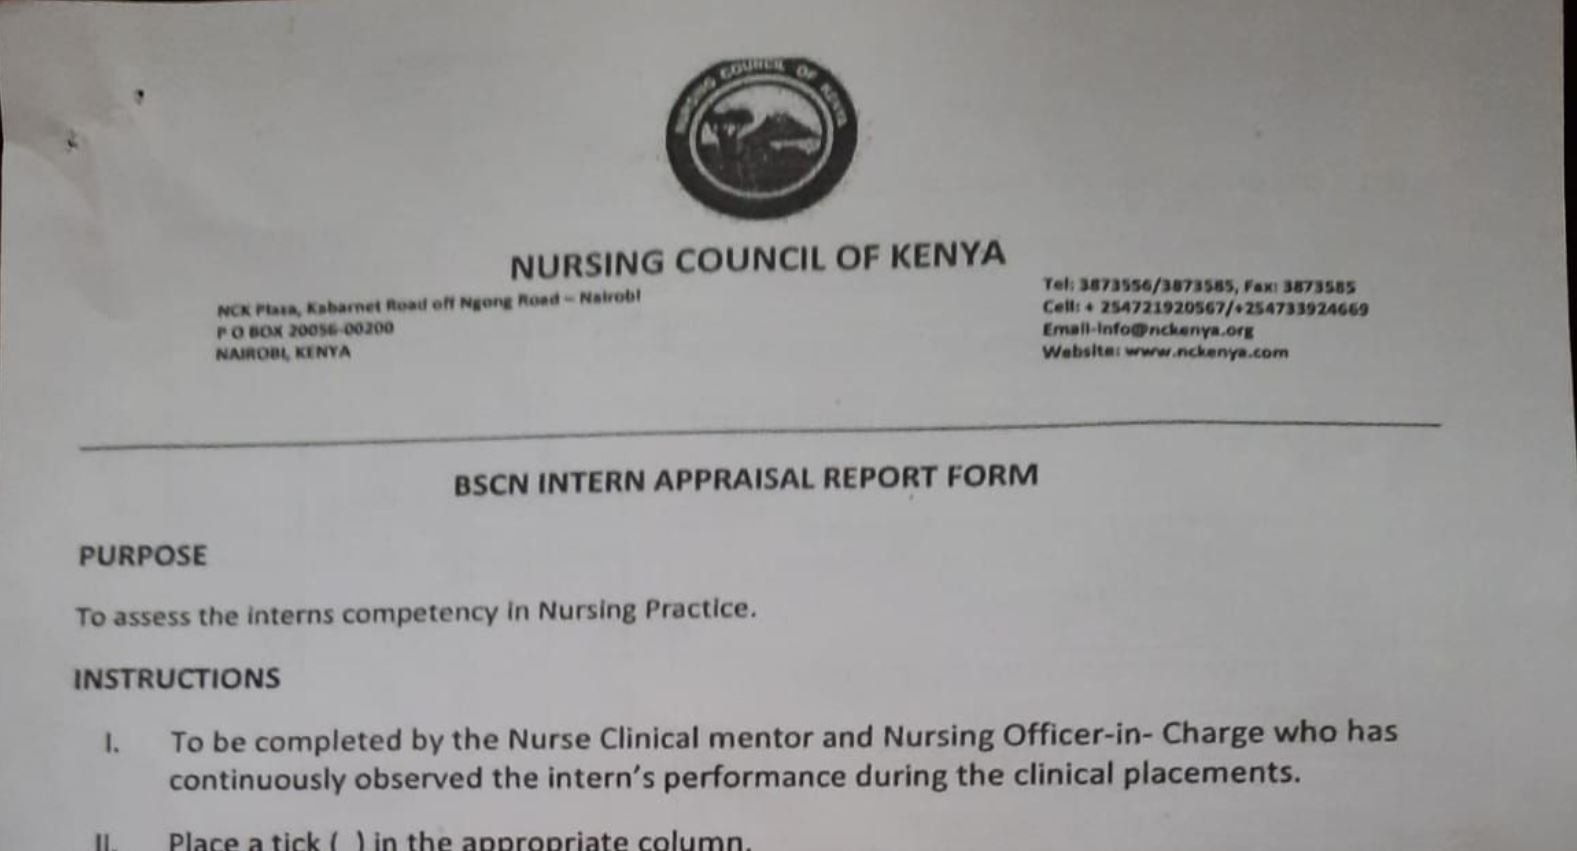 NCK BSCN internal appraisal report form